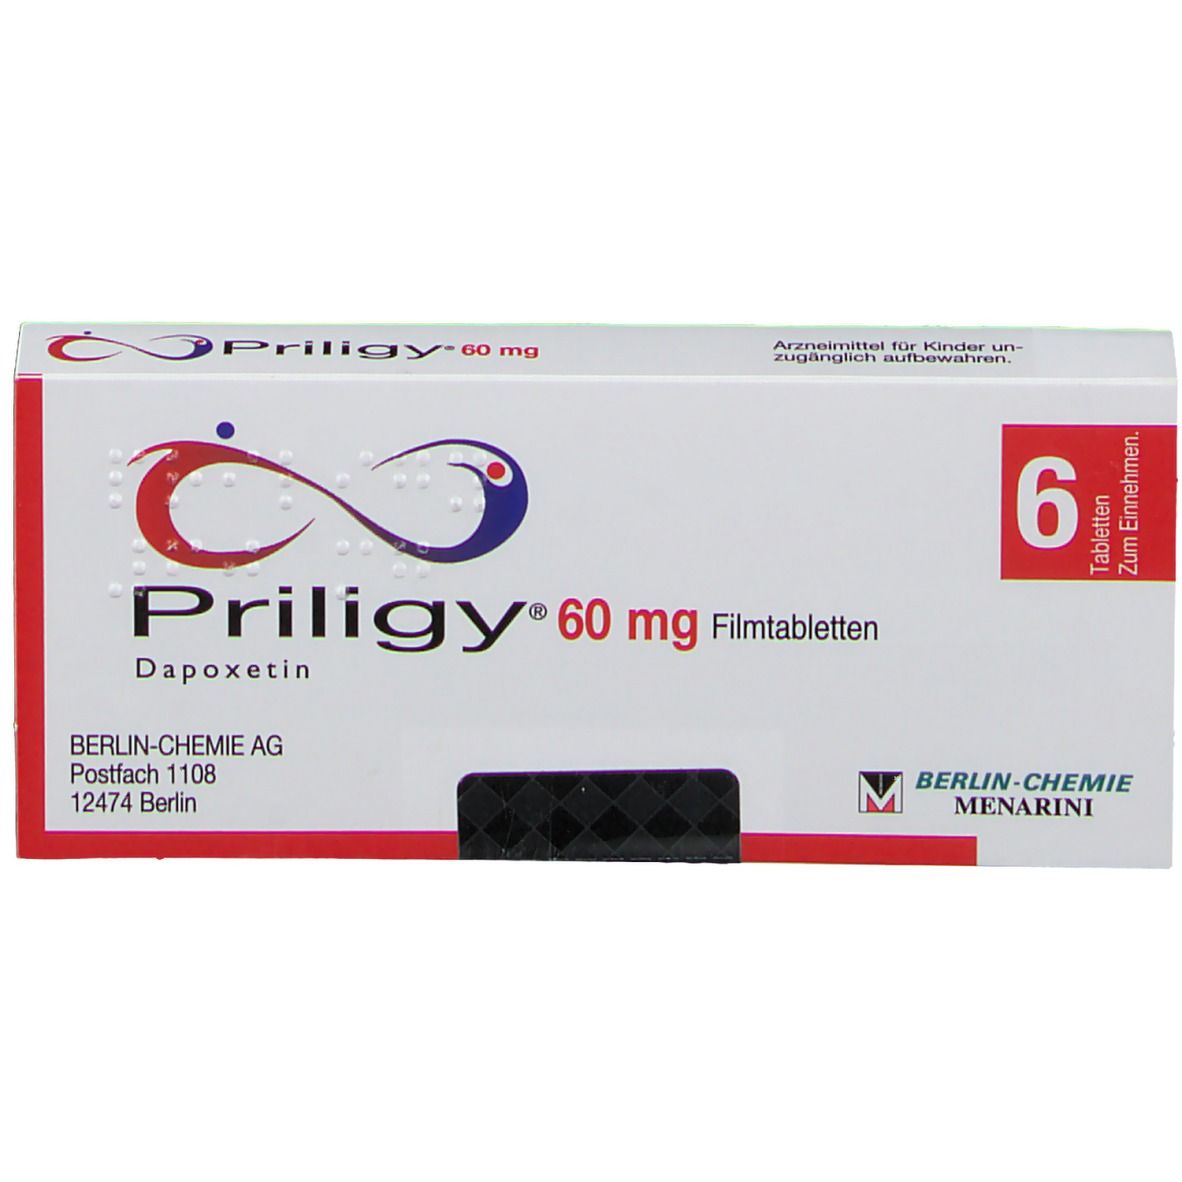 Priligy® 60 mg